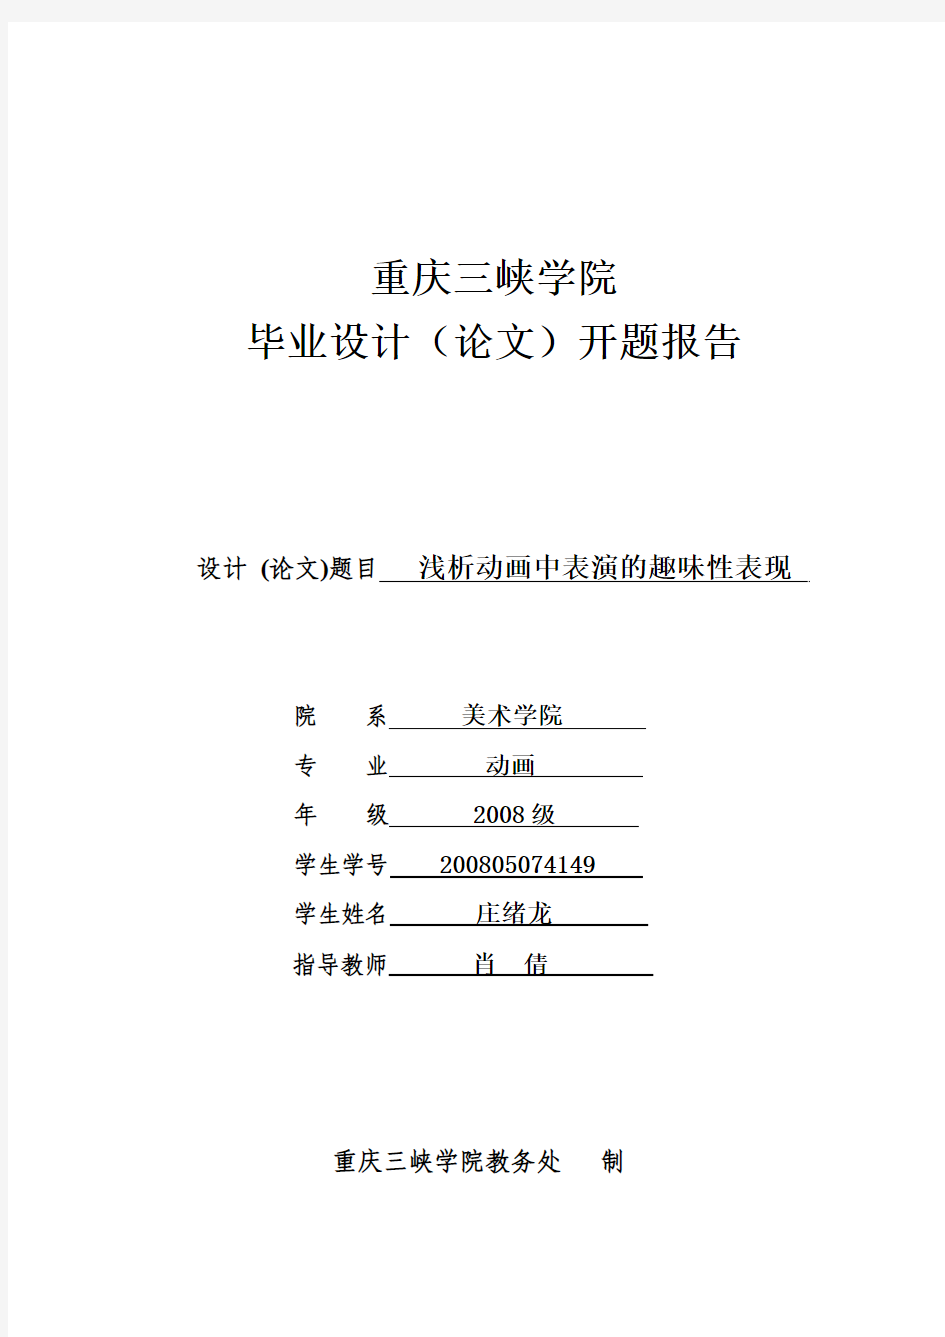 重庆三峡学院毕业设计(论文)开题报告